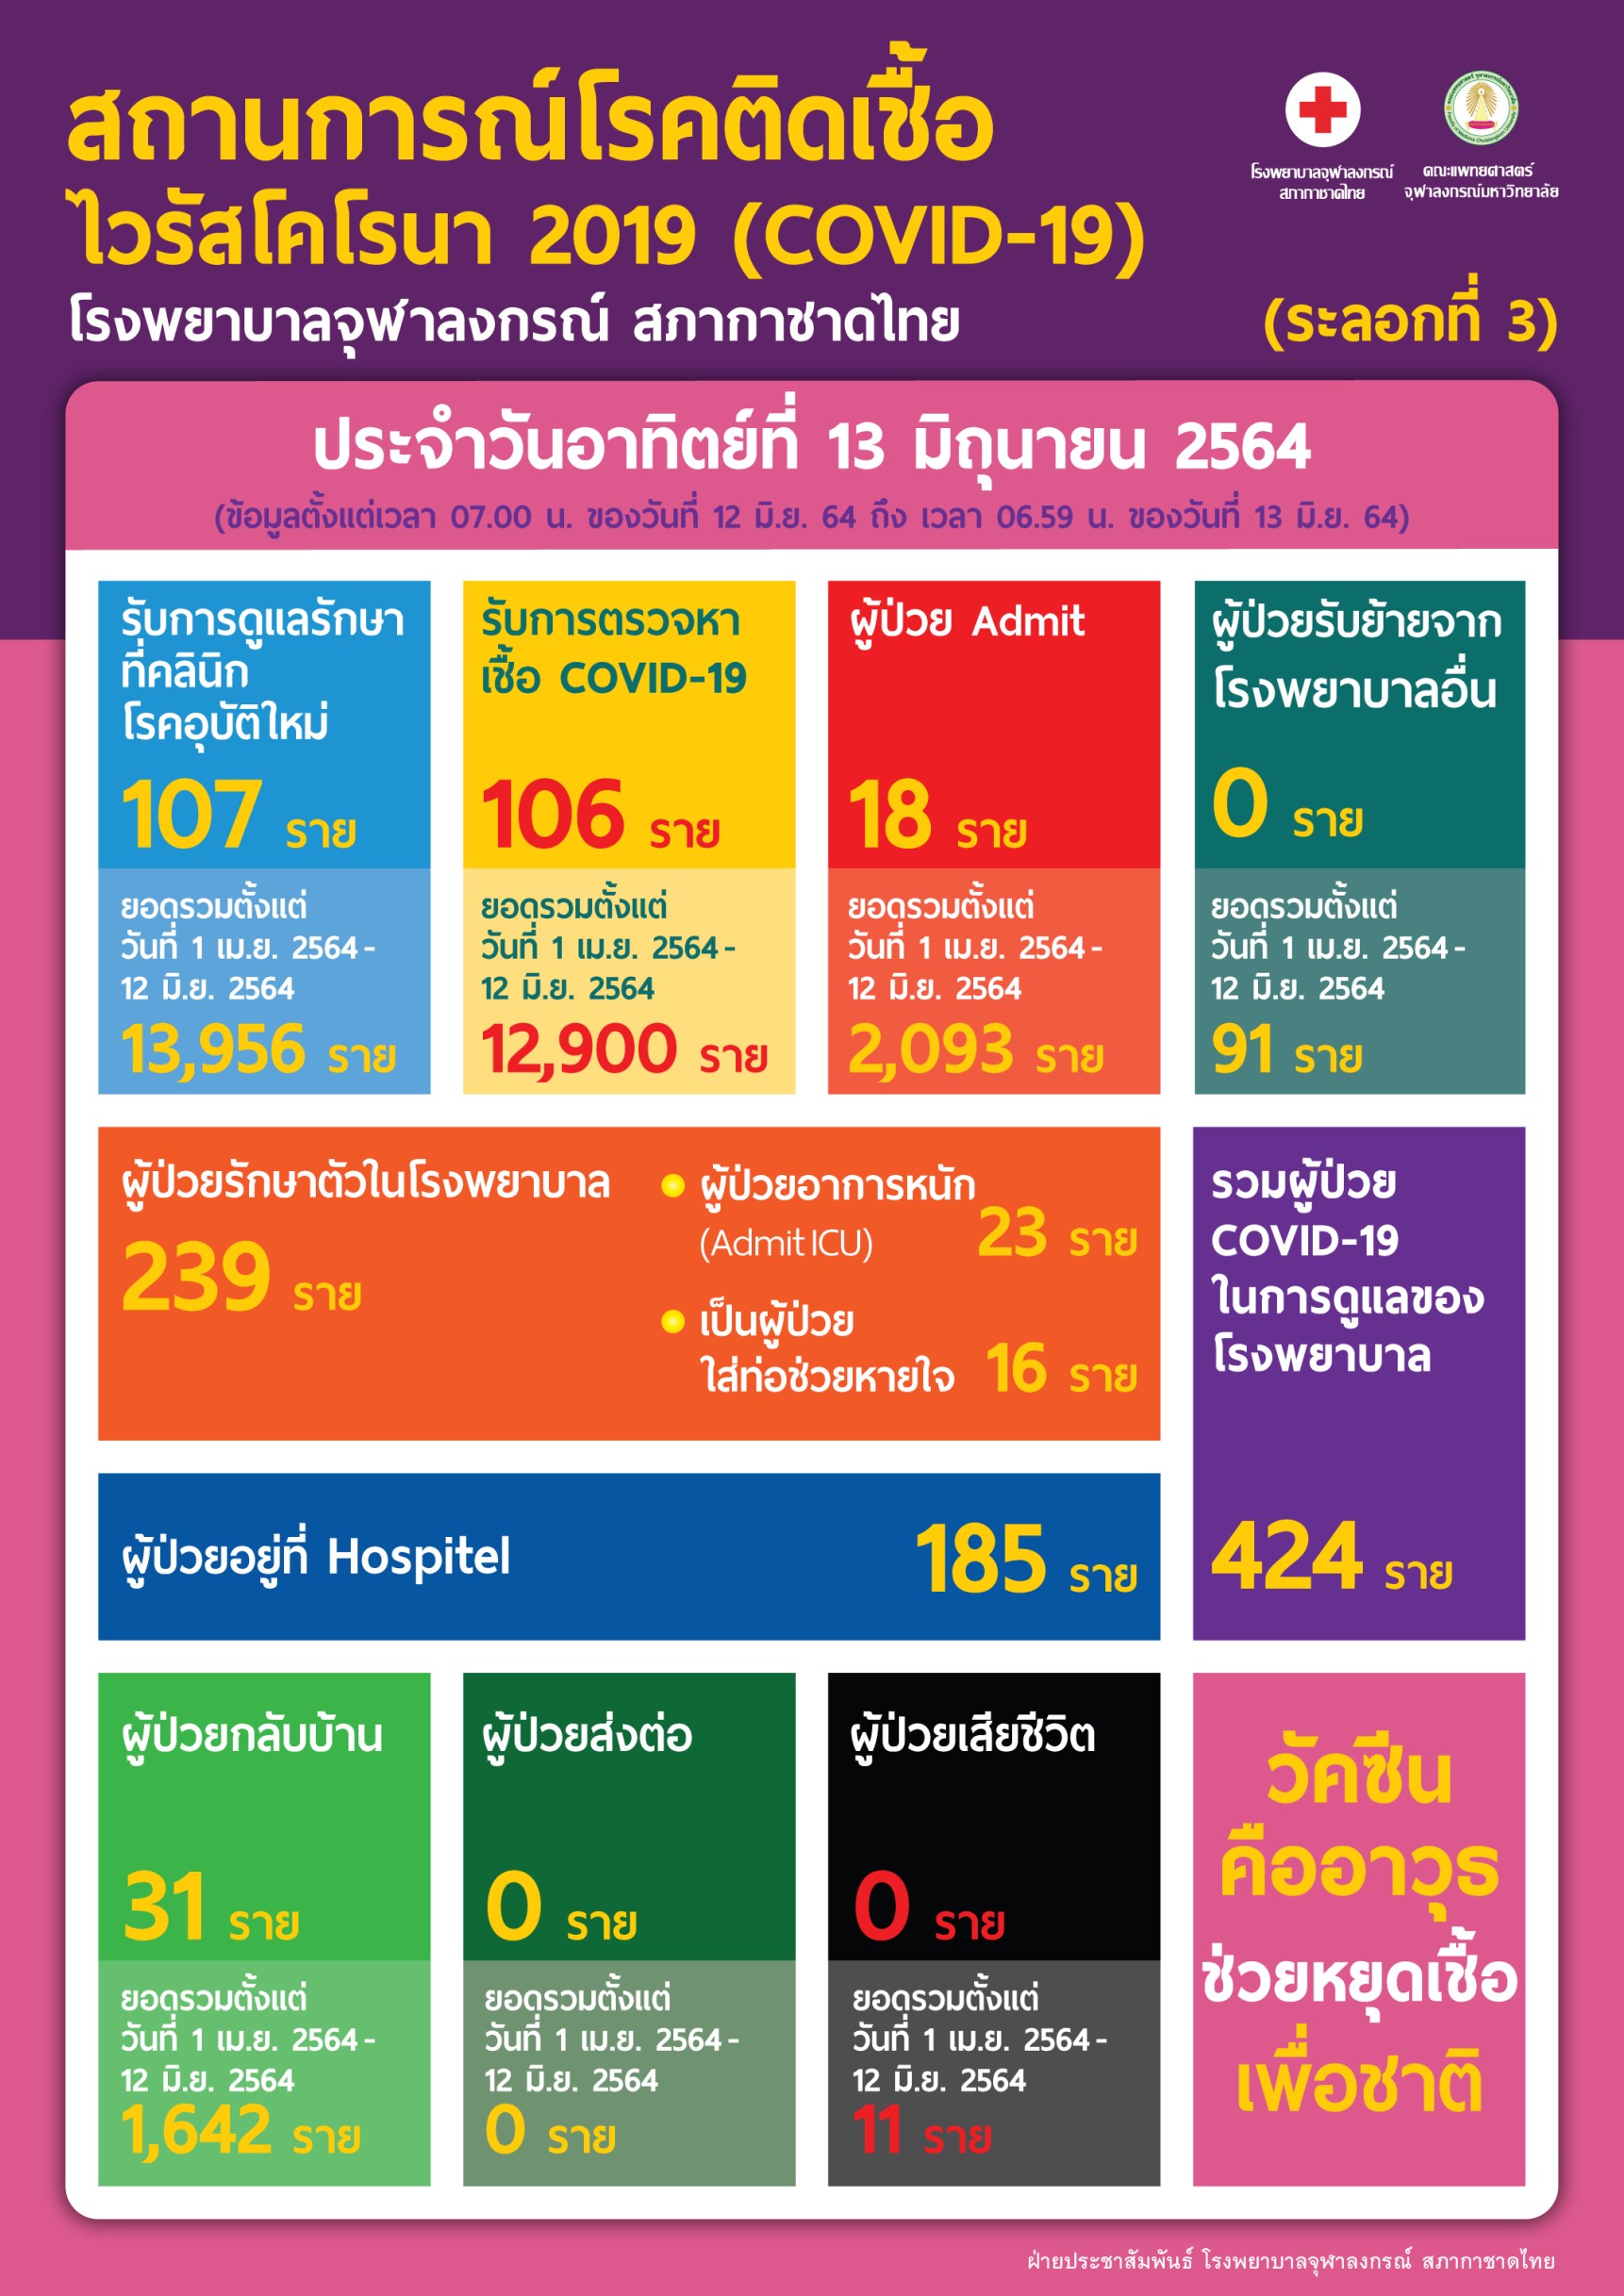 สถานการณ์โรคติดเชื้อไวรัสโคโรนา 2019 (COVID-19) (ระลอกที่ 3) โรงพยาบาลจุฬาลงกรณ์ สภากาชาดไทย ประจำวันอาทิตย์ที่ 13 มิถุนายน 2564